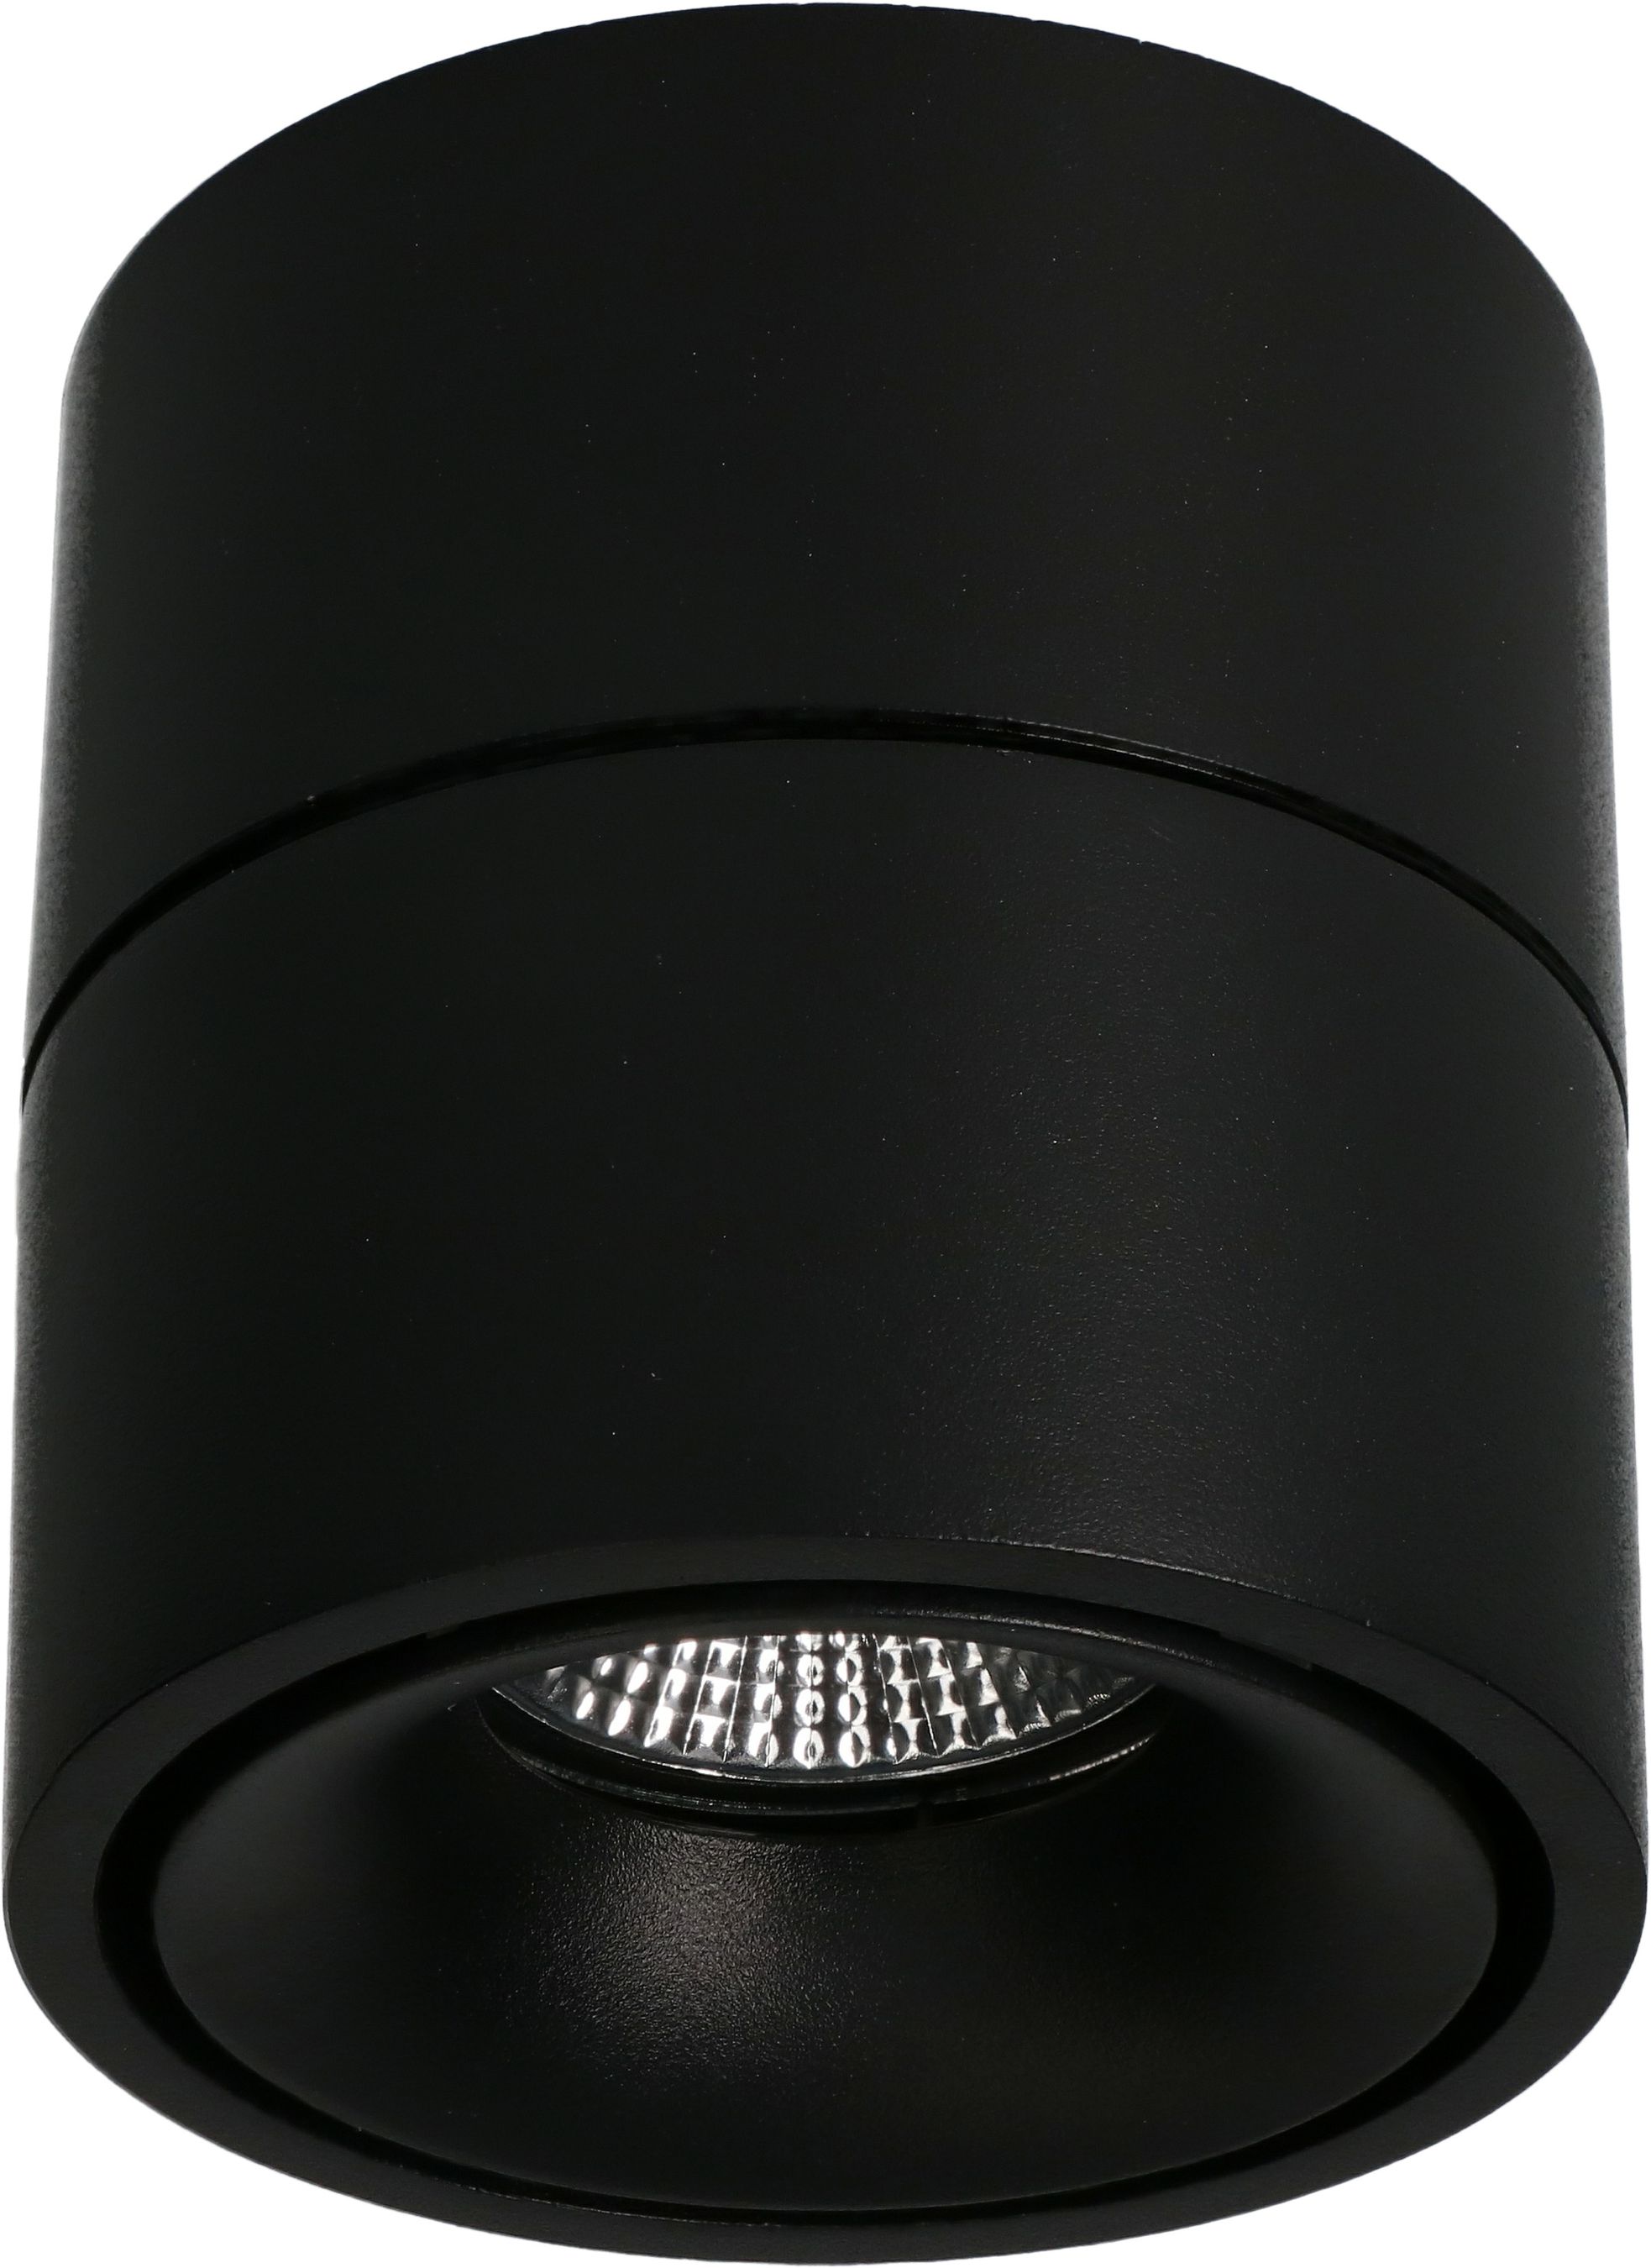 LED plafonnier BIG SHINE mat noir 3000K 1100lm 36°